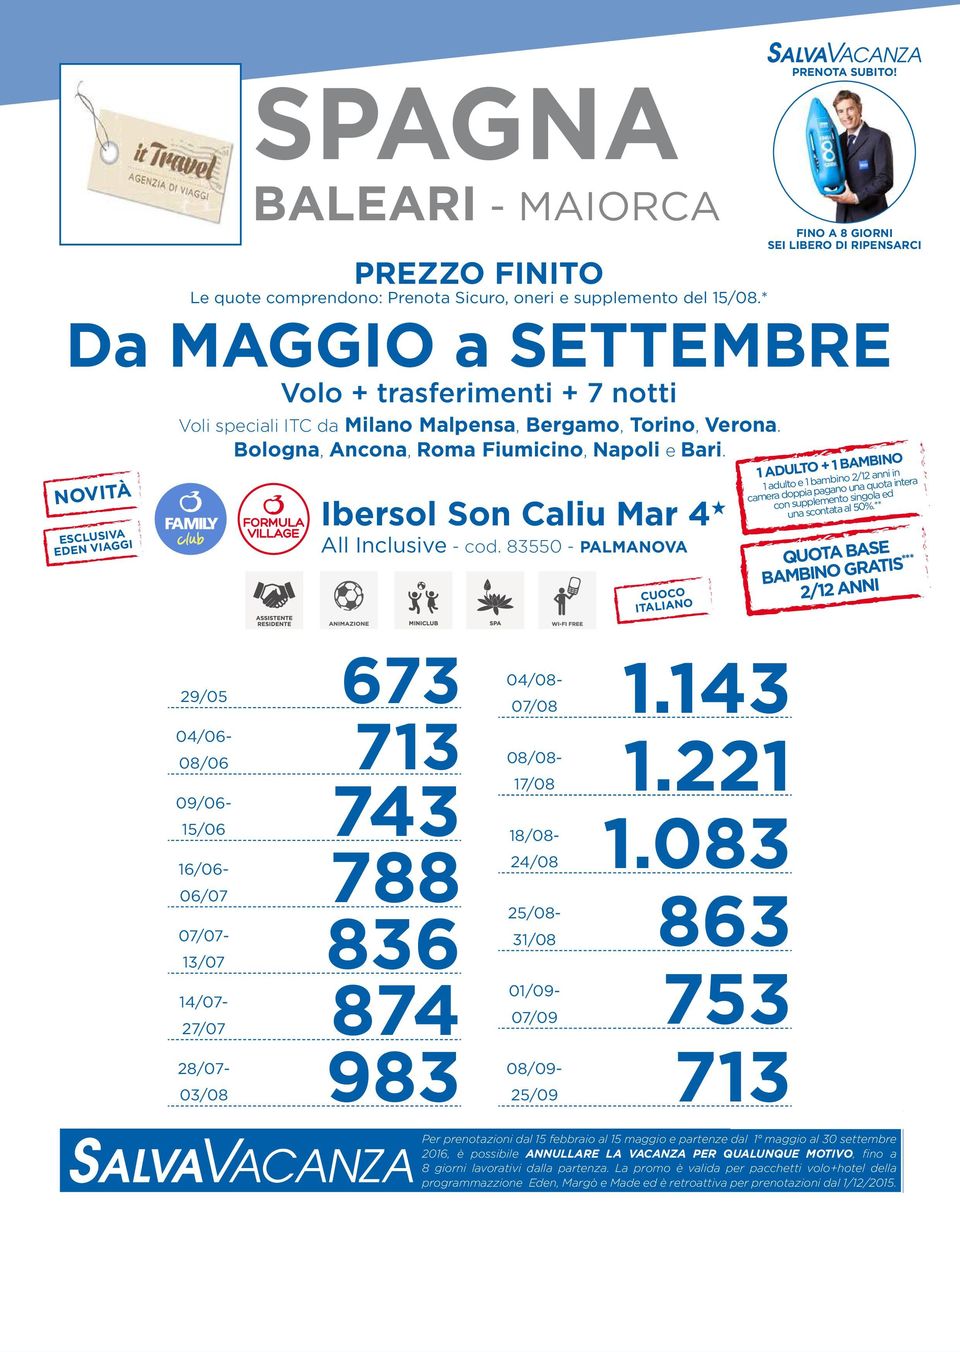 Ibersol Son Caliu Mar 4 H All Inclusive - cod. 83550 - PALMANOVA CUOCO ITALIANO PRENOTA SUBITO!